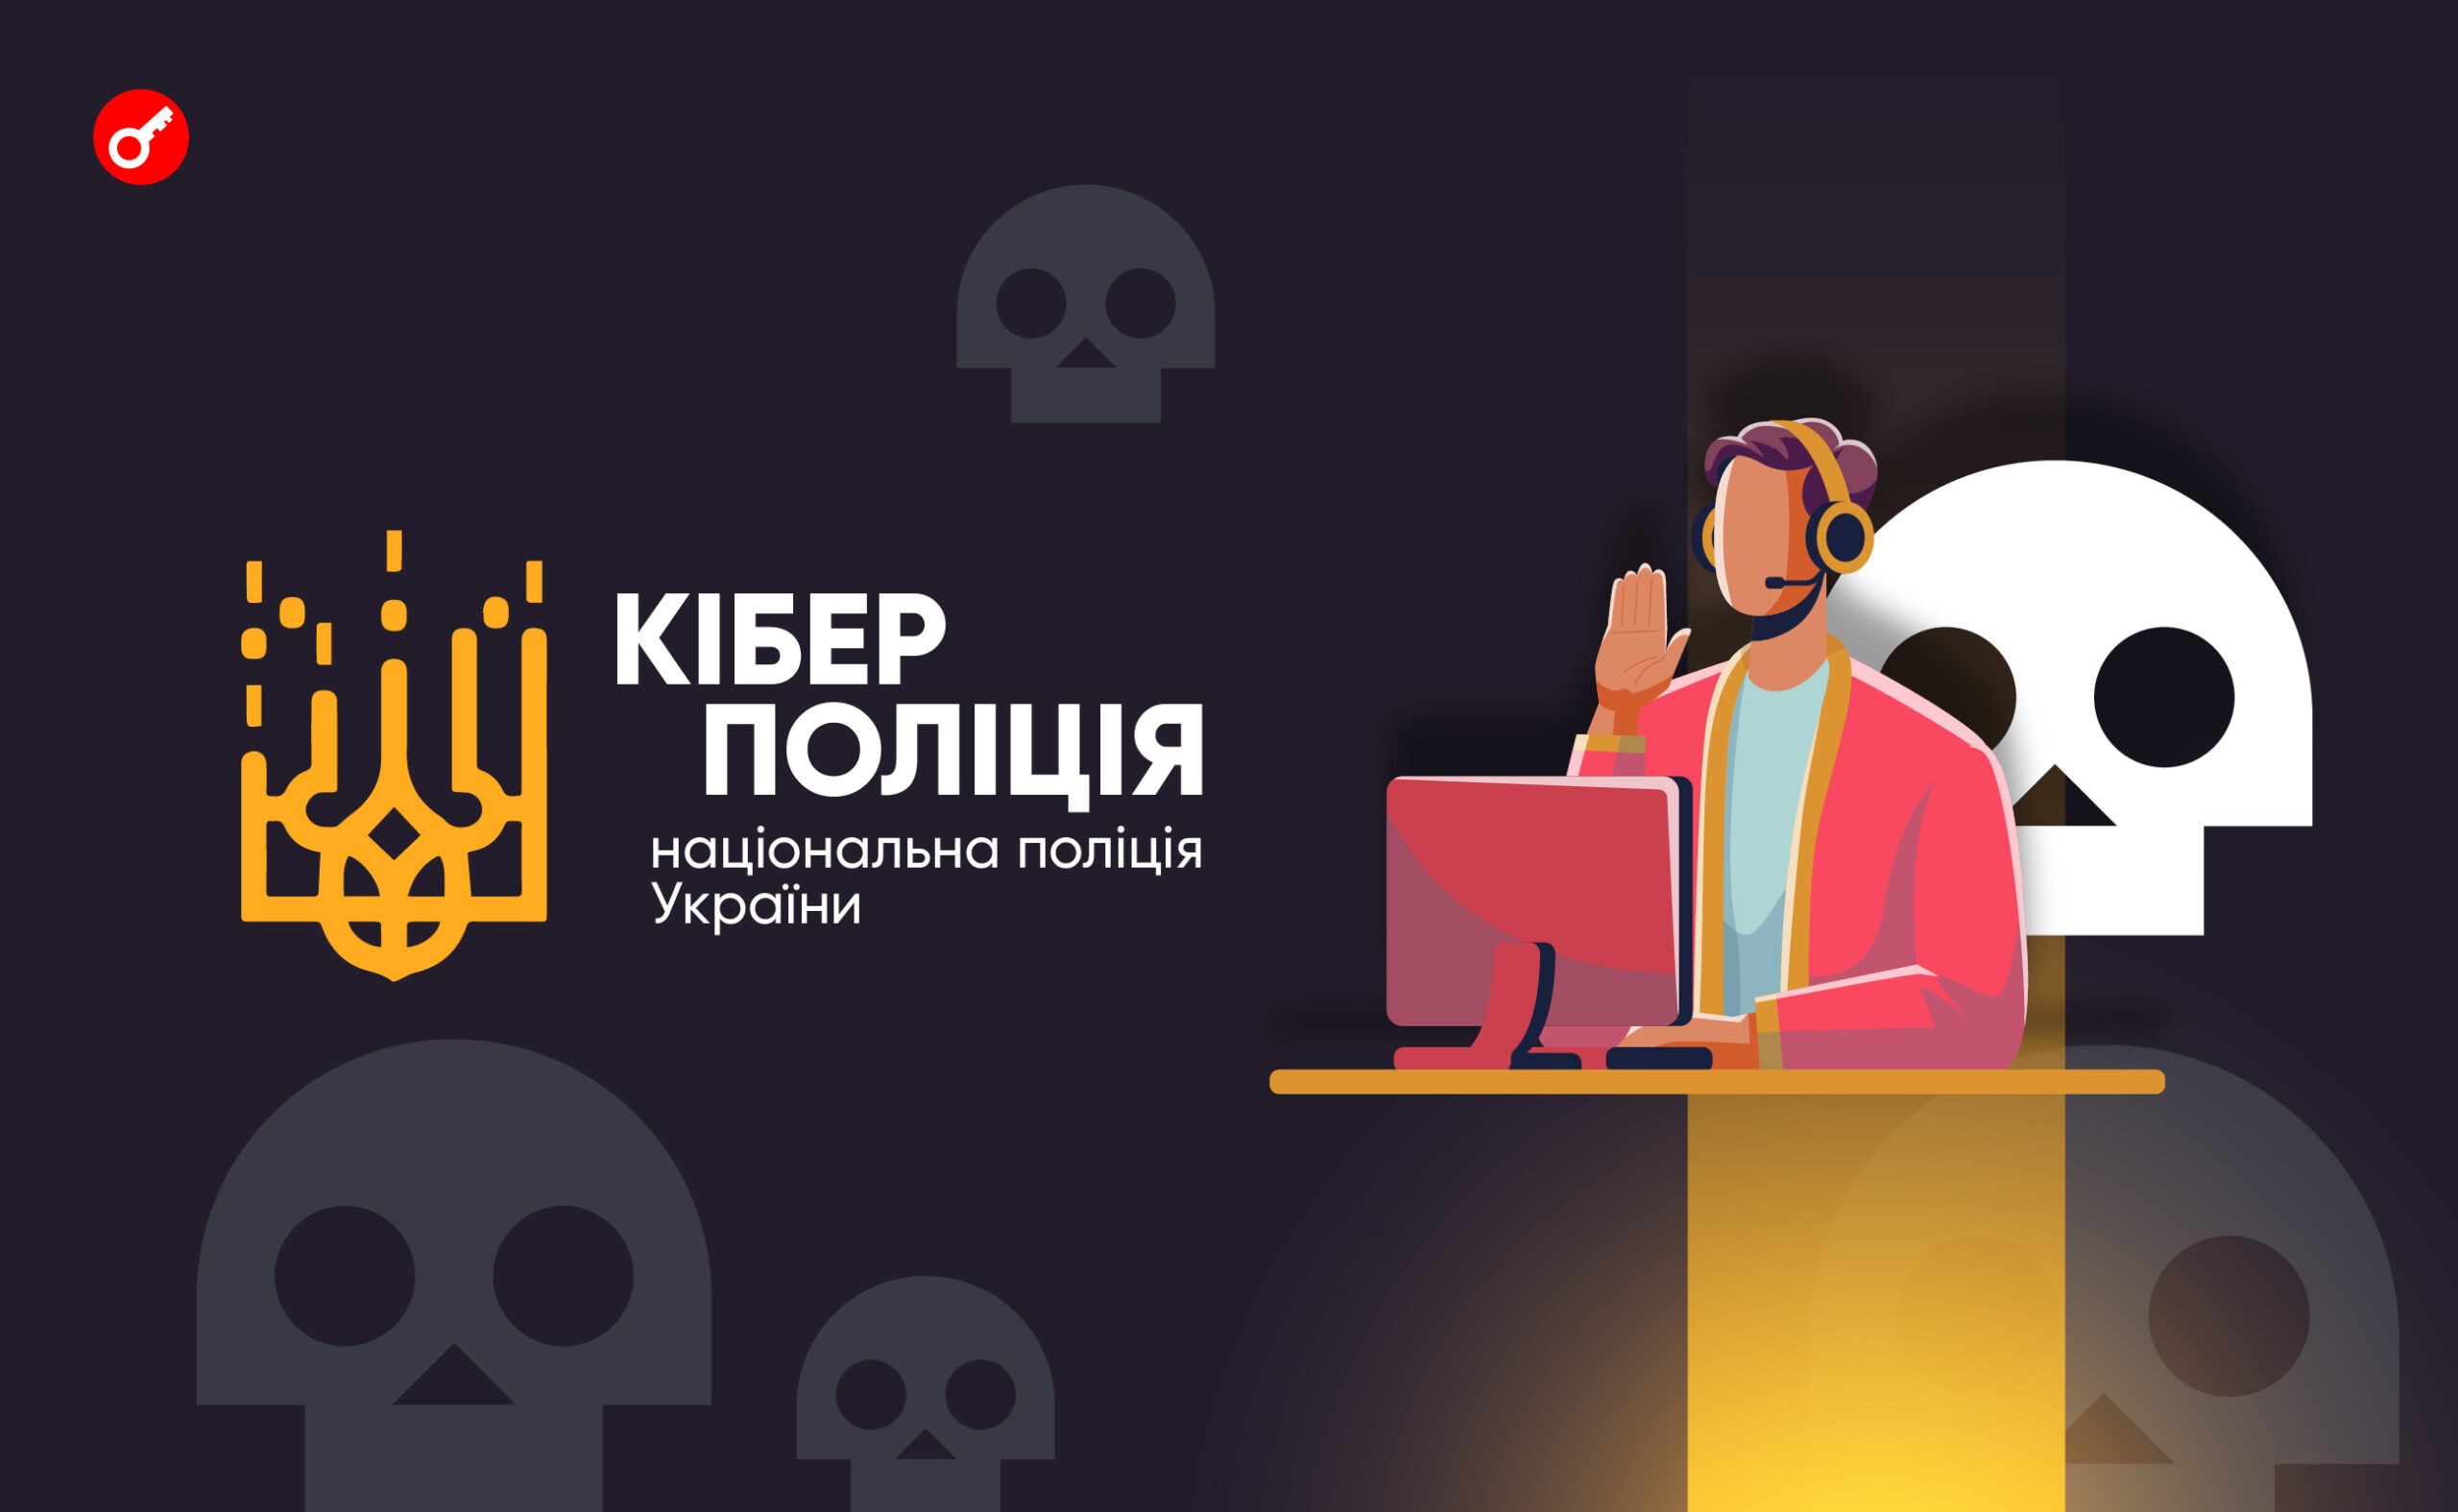 У Кіберполіції України розповіли про боротьбу зі злочинами в криптосфері. Головний колаж новини.